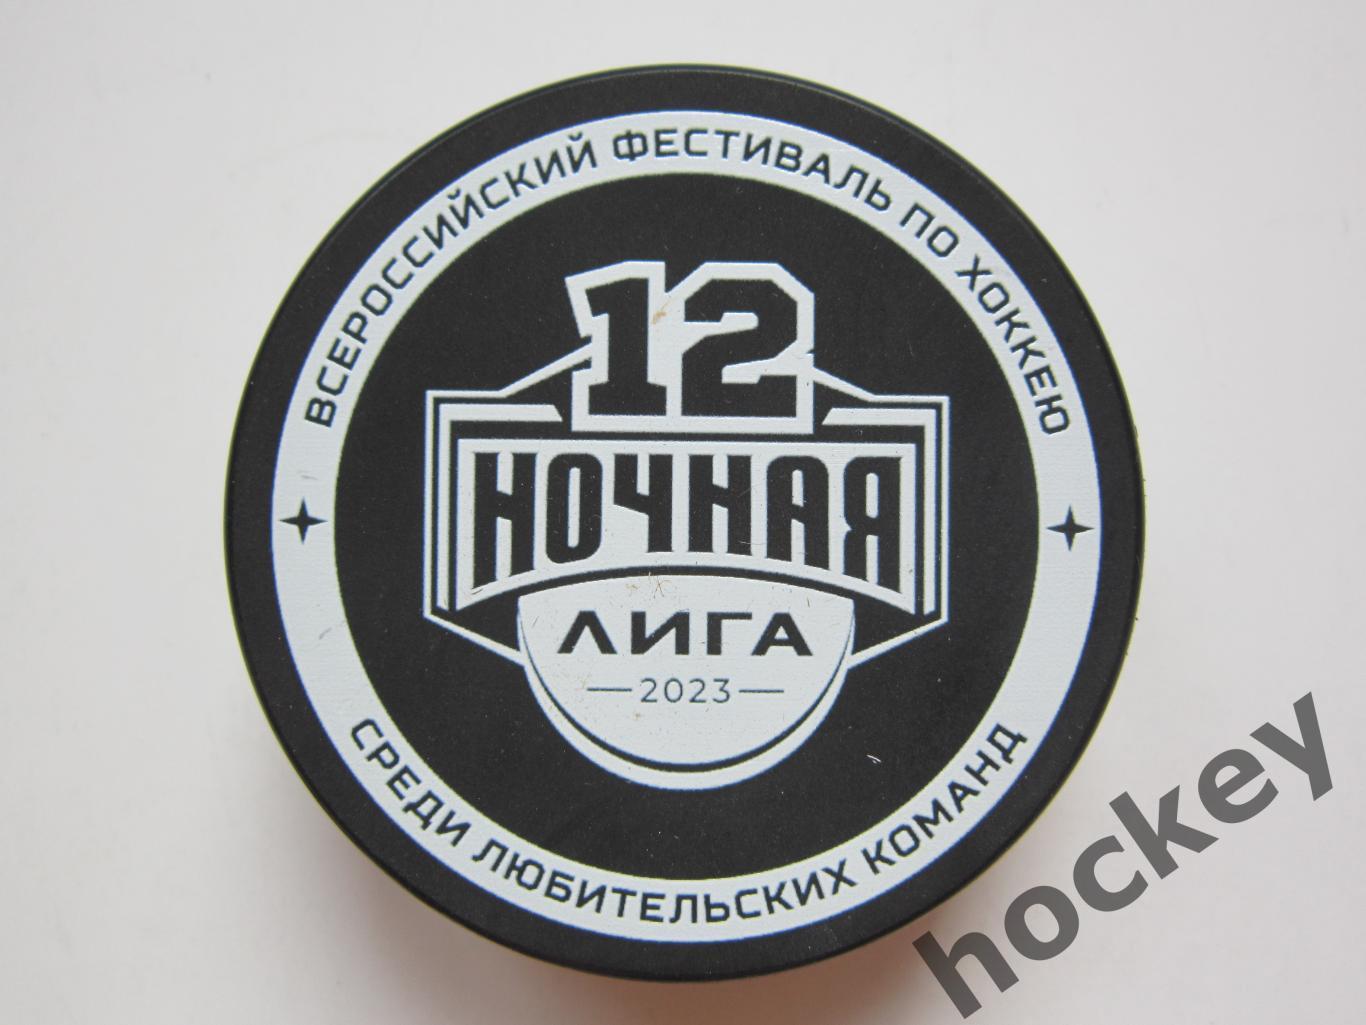 Шайба Ночная хоккейная лига (2023 год). 12-й фестиваль